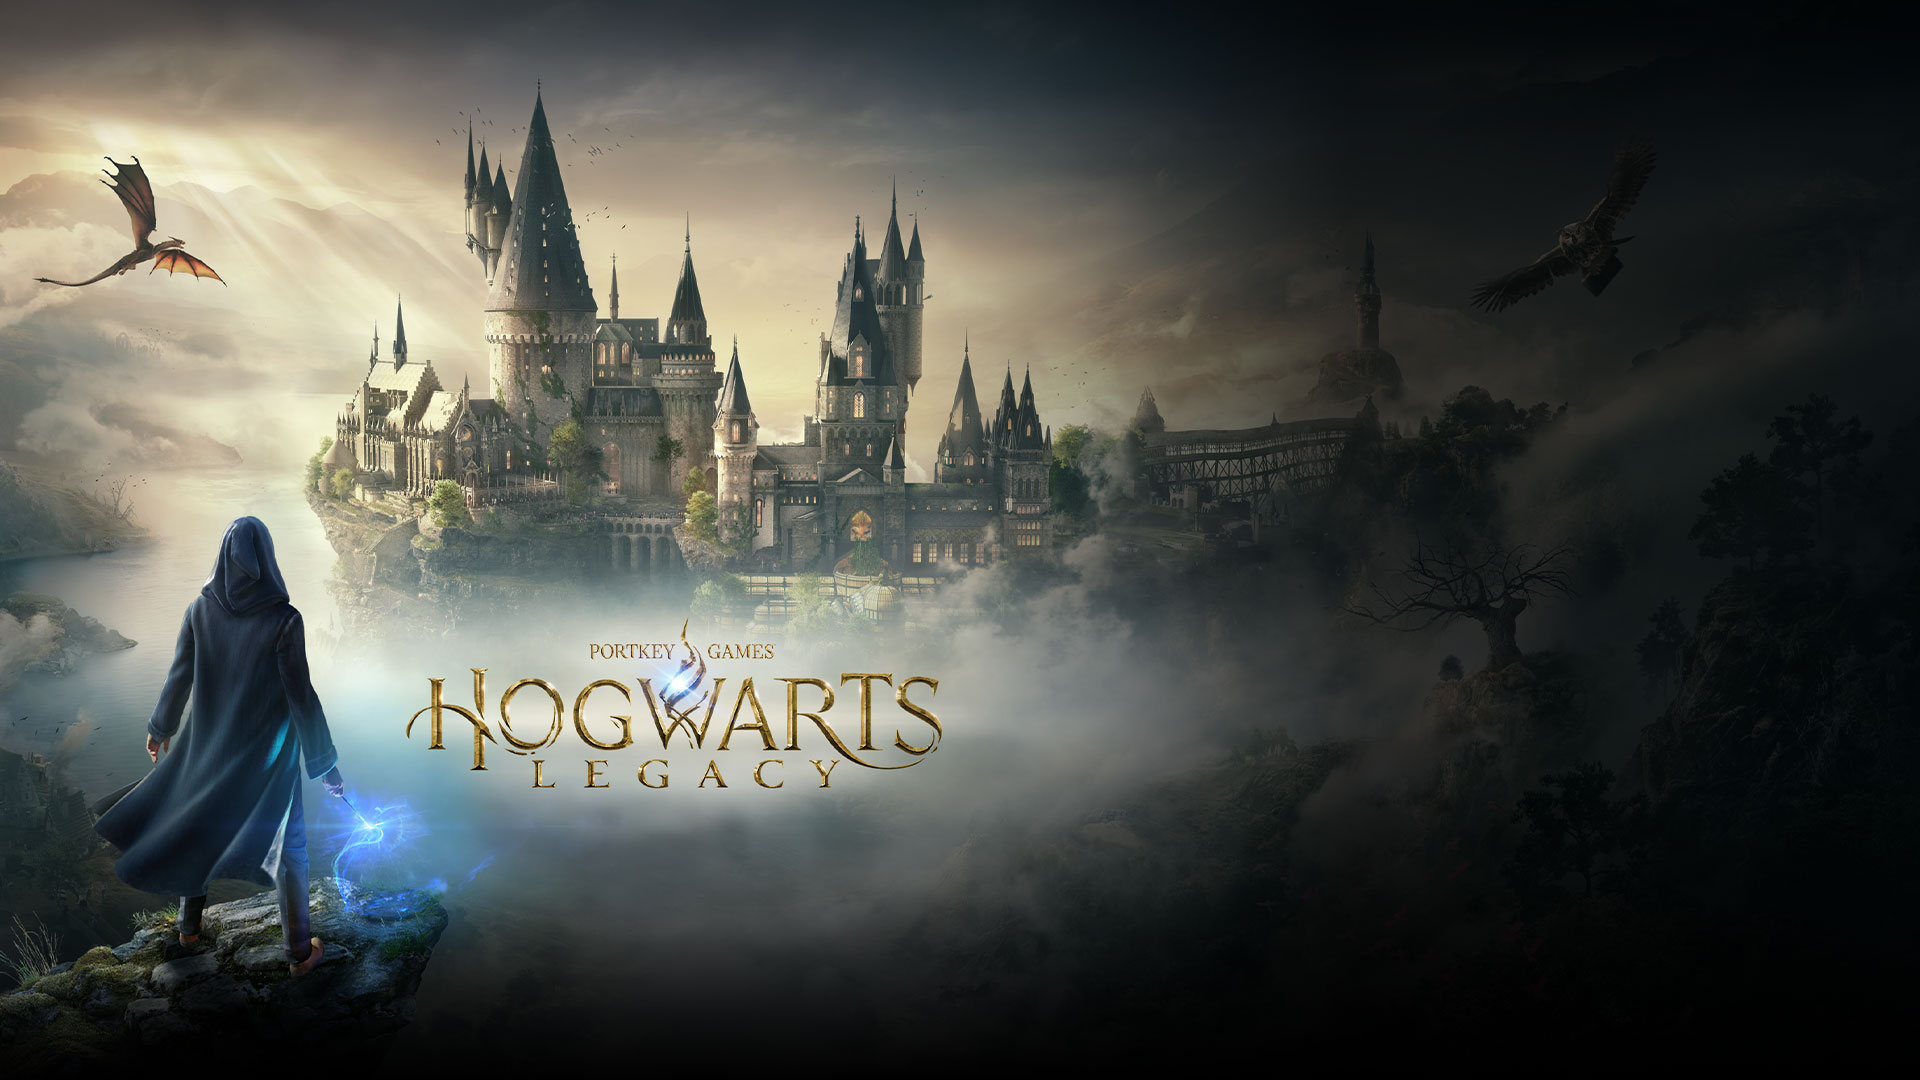 Παιχνίδια Portkey, Hogwarts Legacy, ένας μαγικός χαρακτήρας που κοιτάζει τον Hogwarts με κουκουβάγια και πτήση δράκου